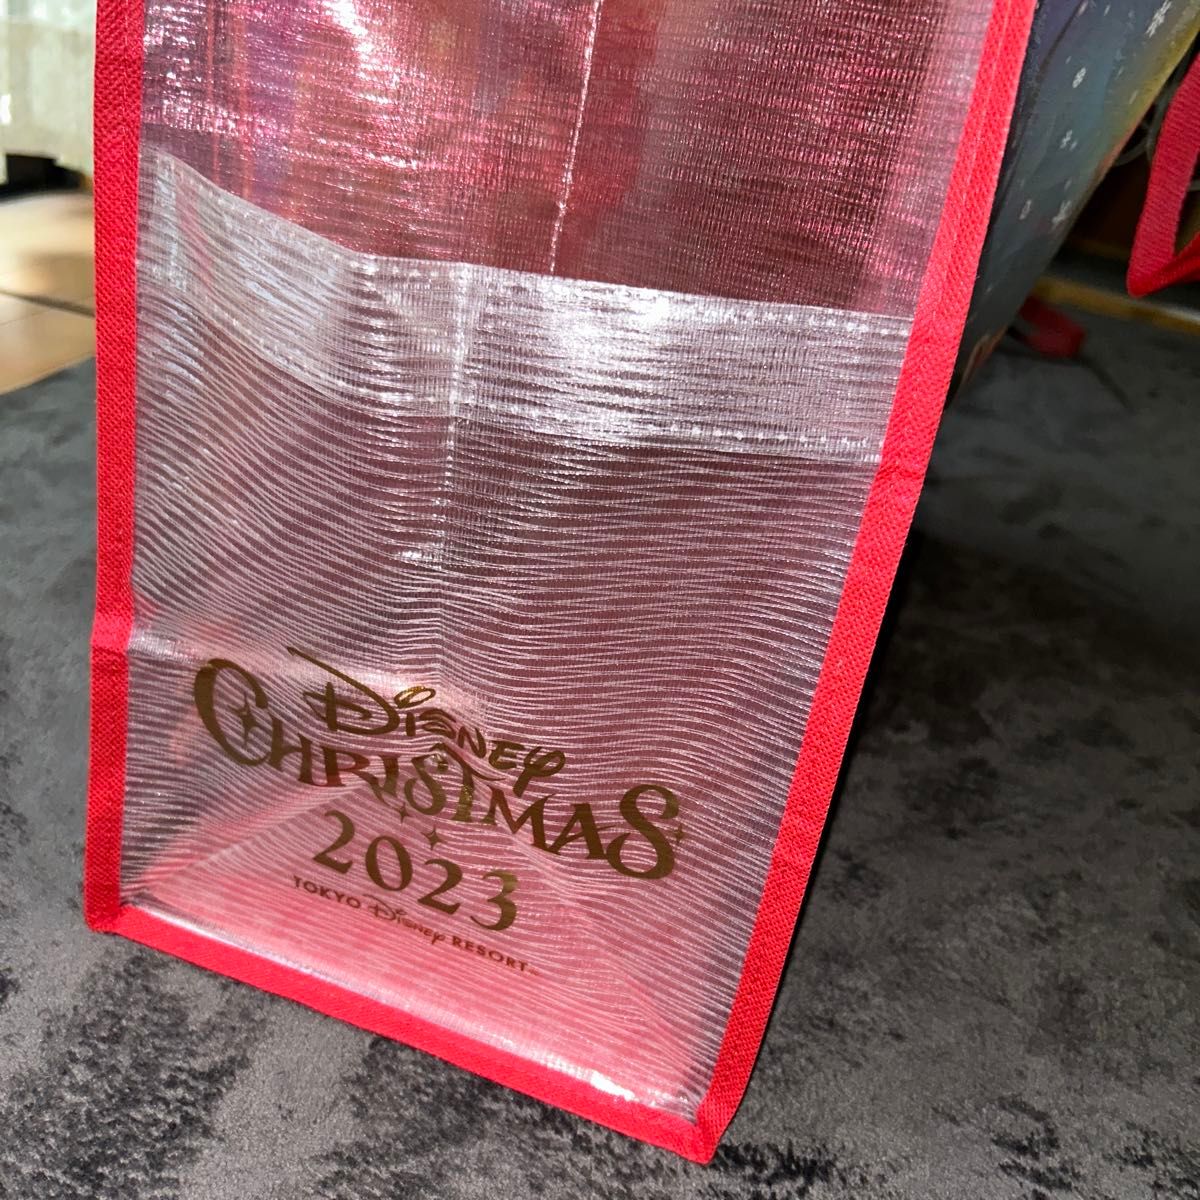 ディズニーショッピングバッグクリスマスバージョンBIGサイズ&マリオ不織布バッグ&ディズニーお土産袋2枚(大サイズ)おまけ付き